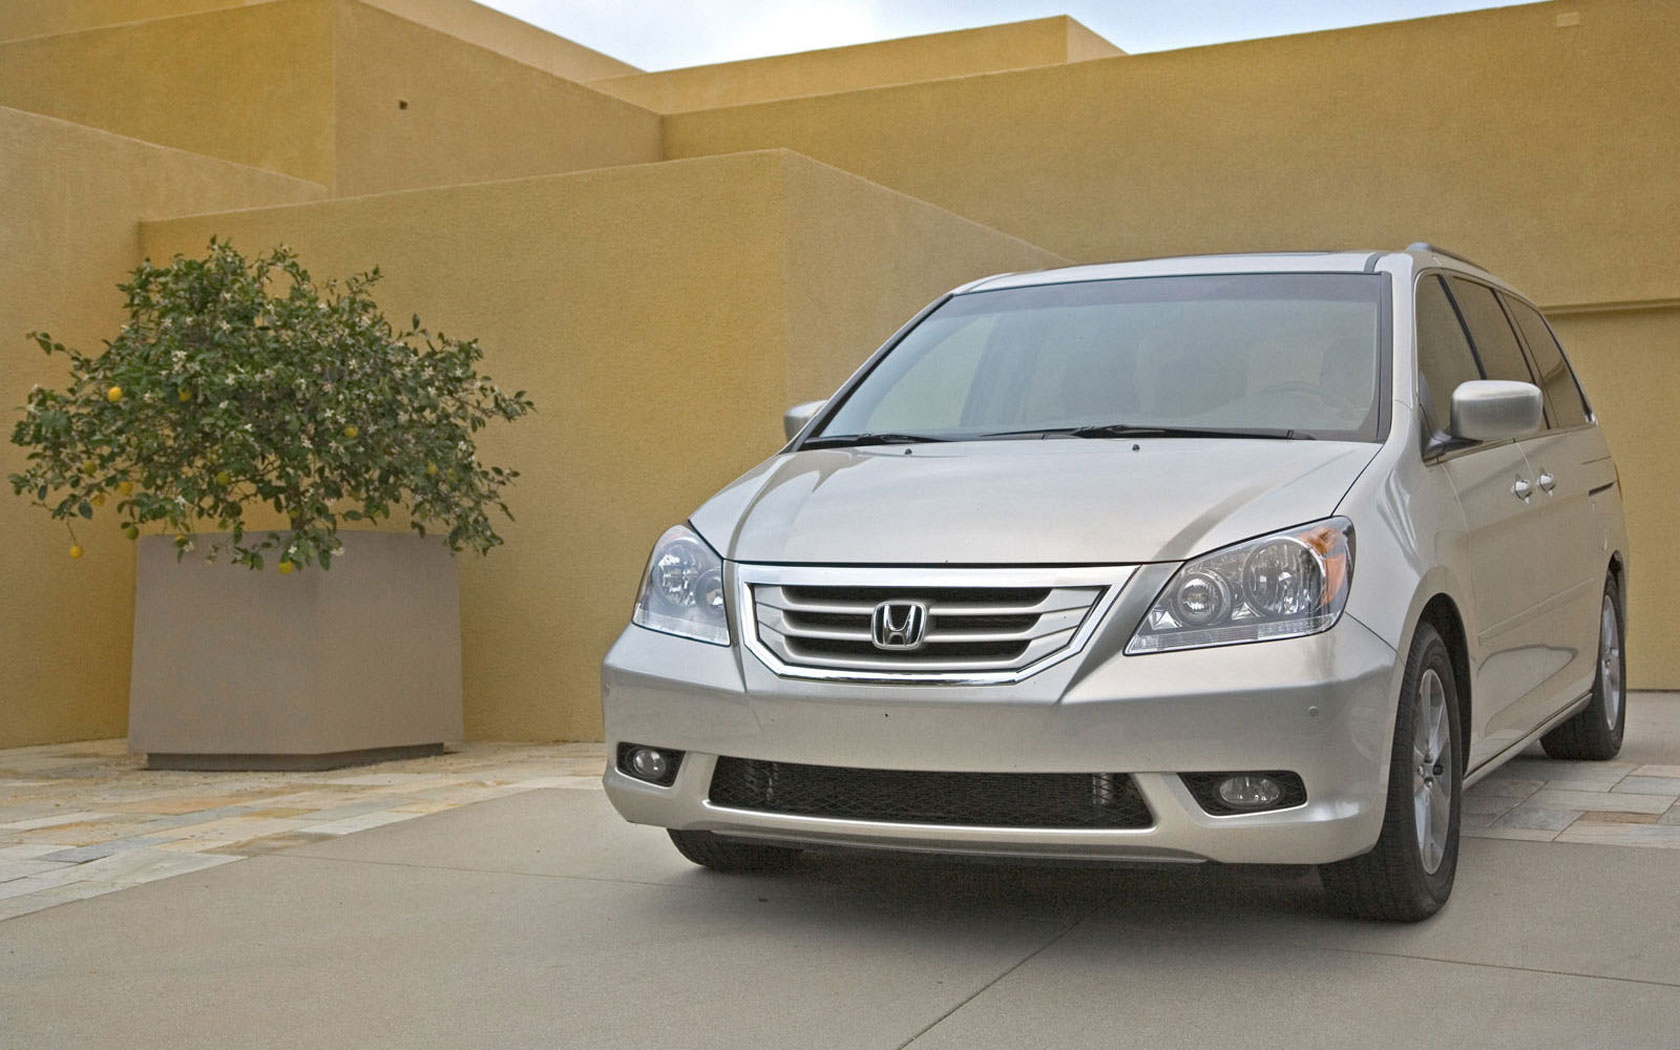  Honda Odyssey (2007-2008)